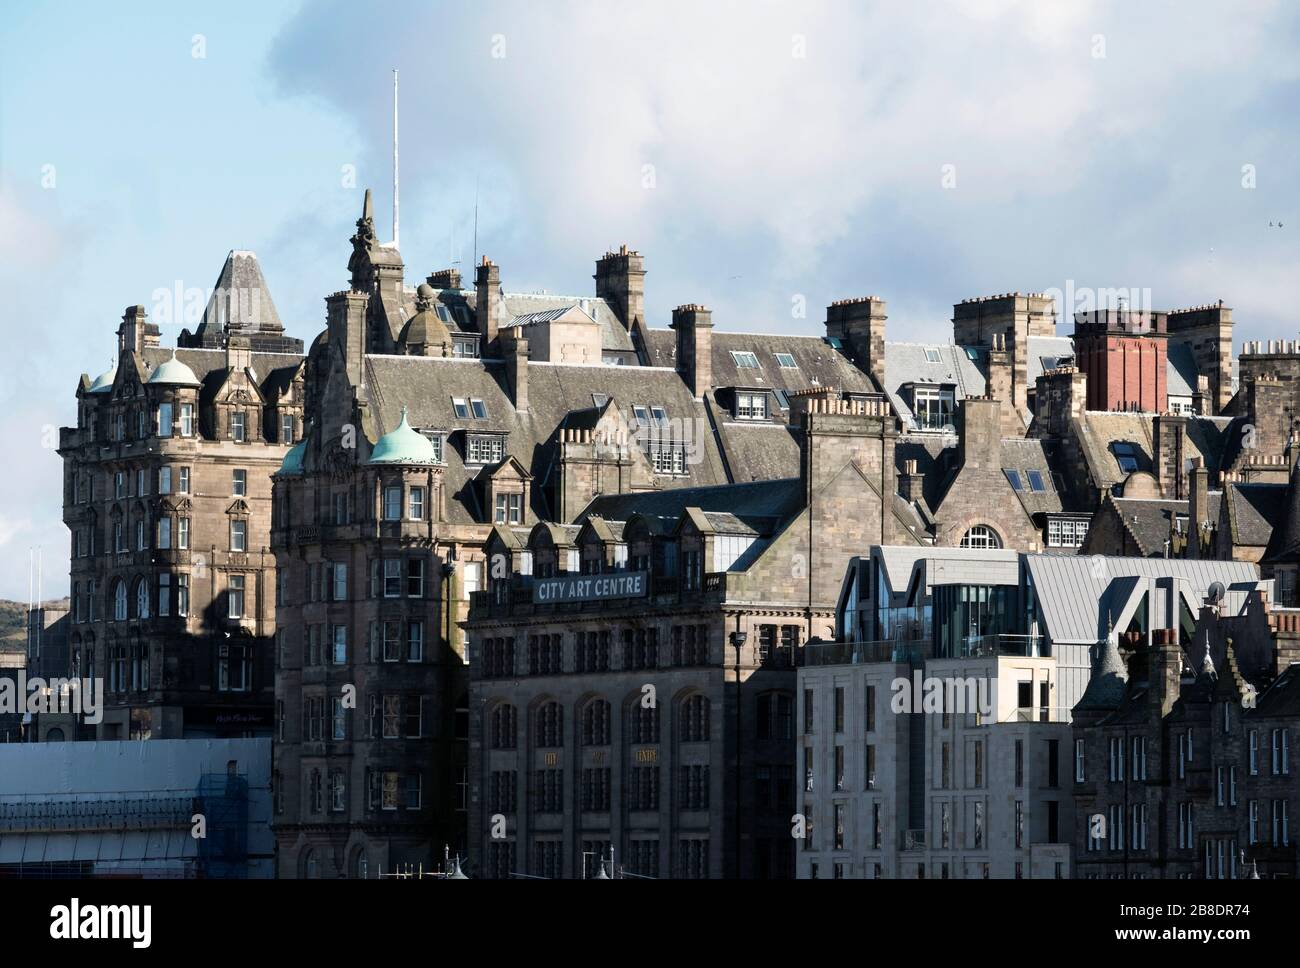 Blick auf das Scotsman Hotel, das City Arts Center und die South Bridge in der Altstadt von Edinburgh. Stockfoto